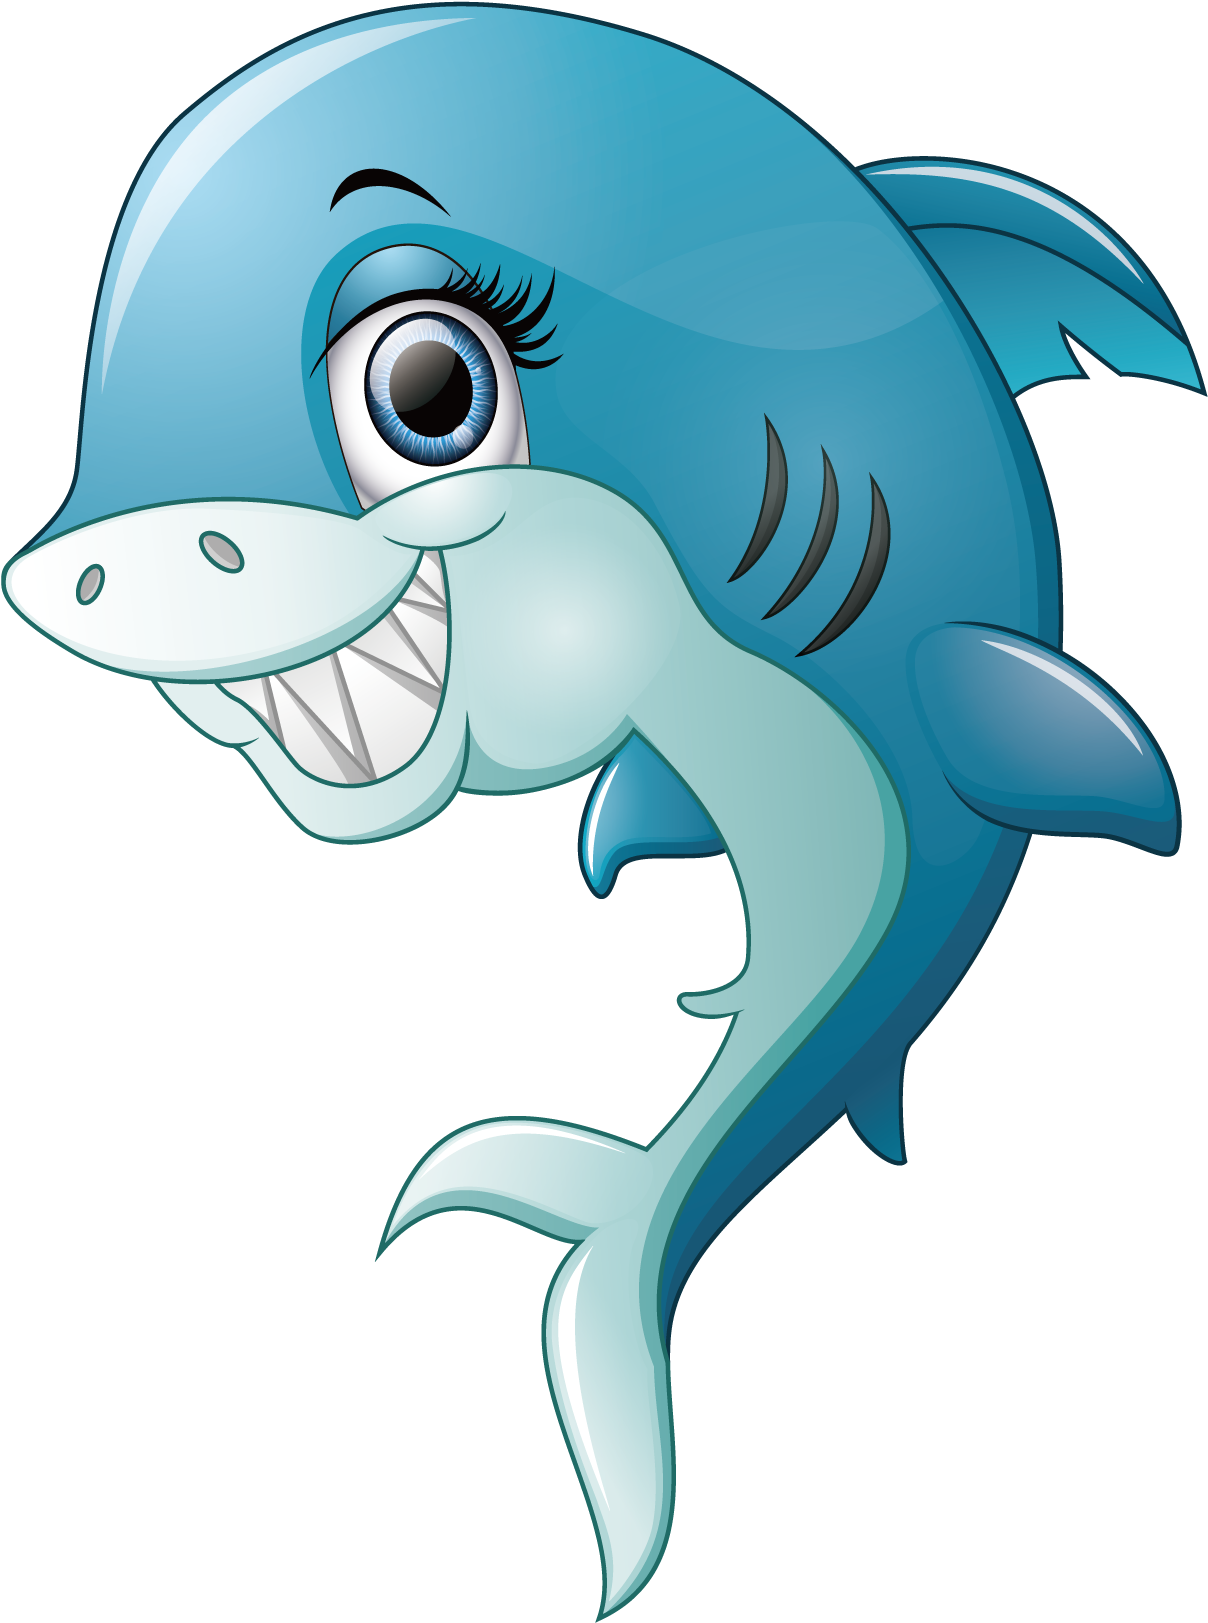 Shark Smile - Smiling Shark - Smiling Shark Cartoon (1800x1800)